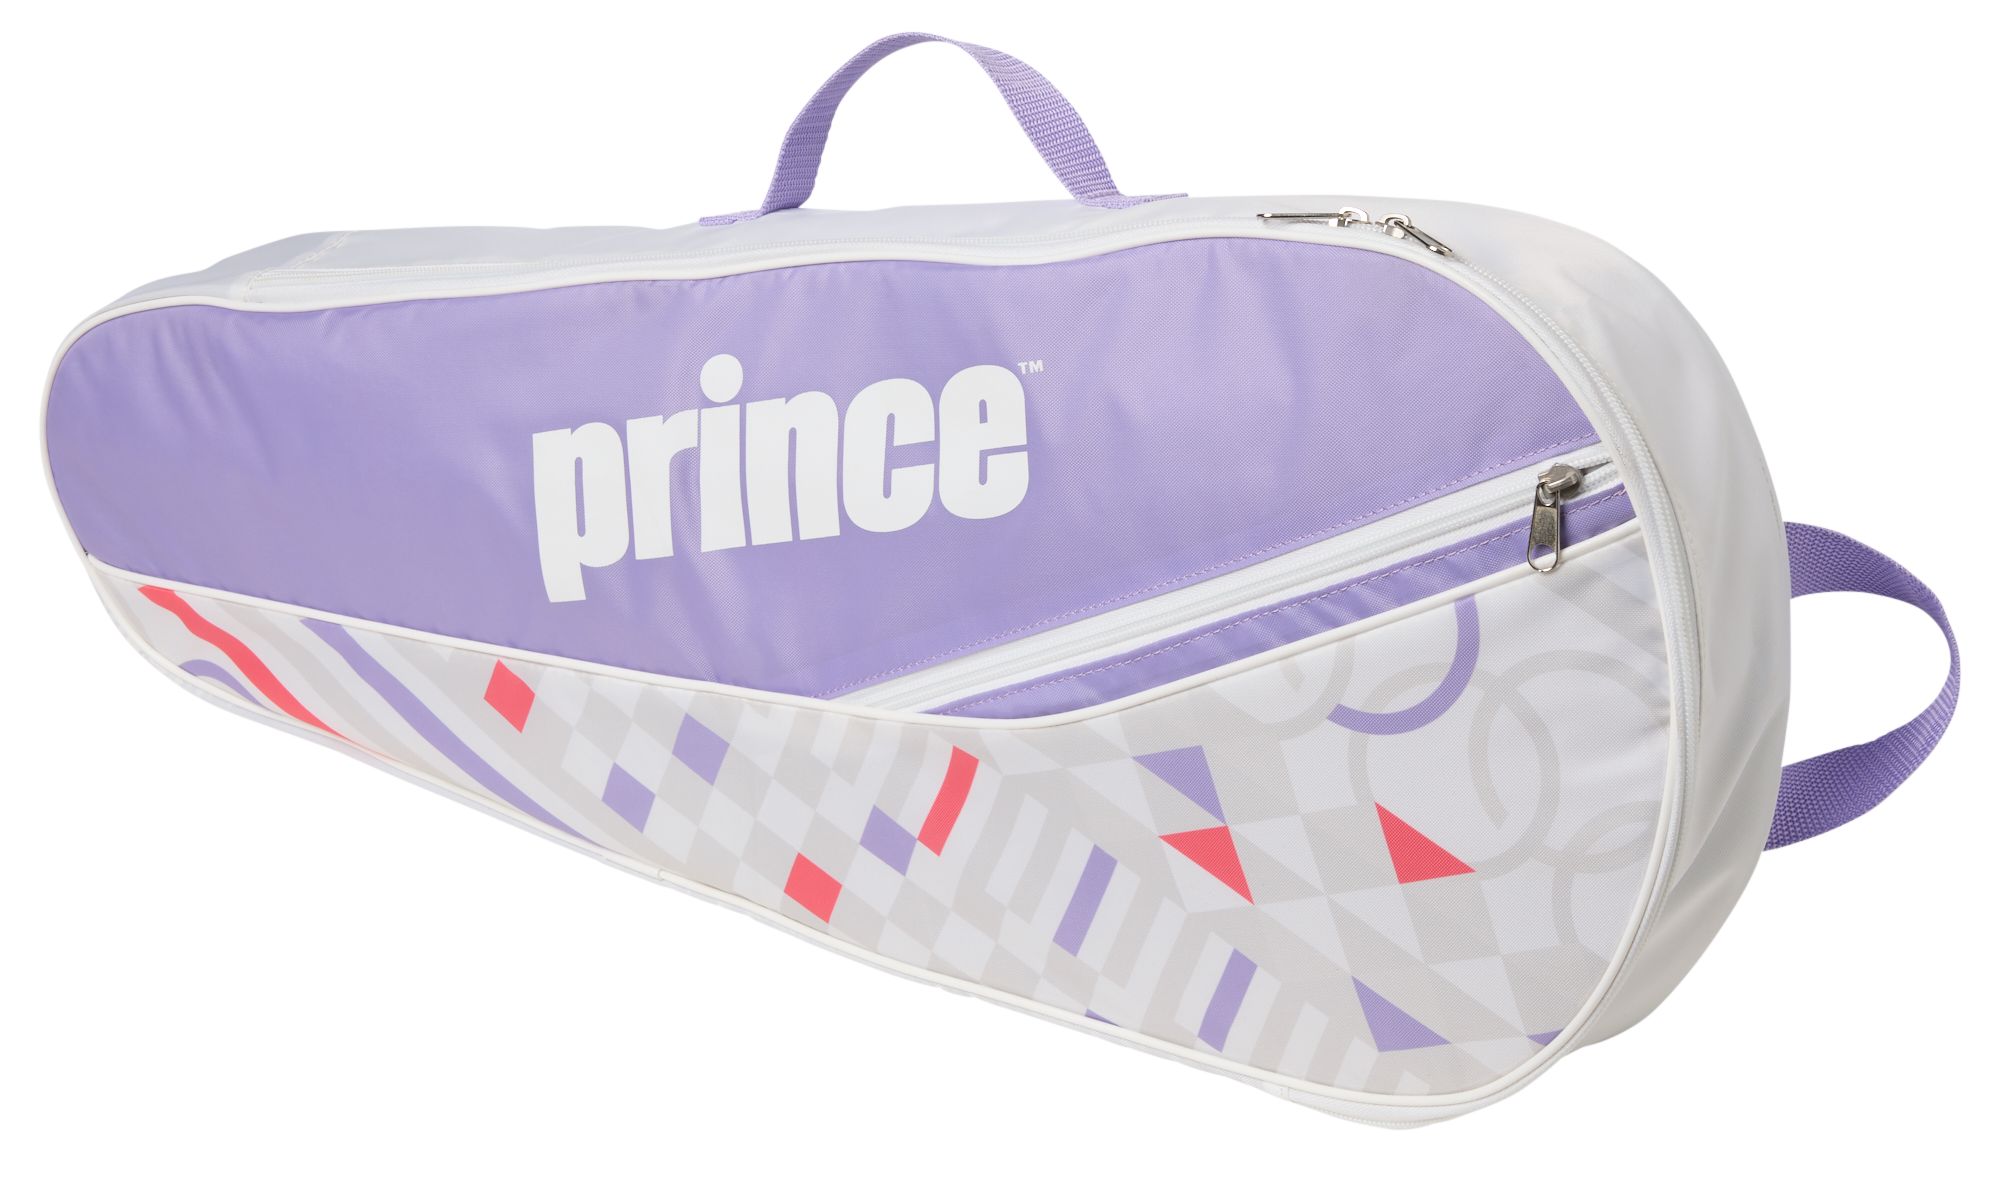 Prince Youth Tennis Bag